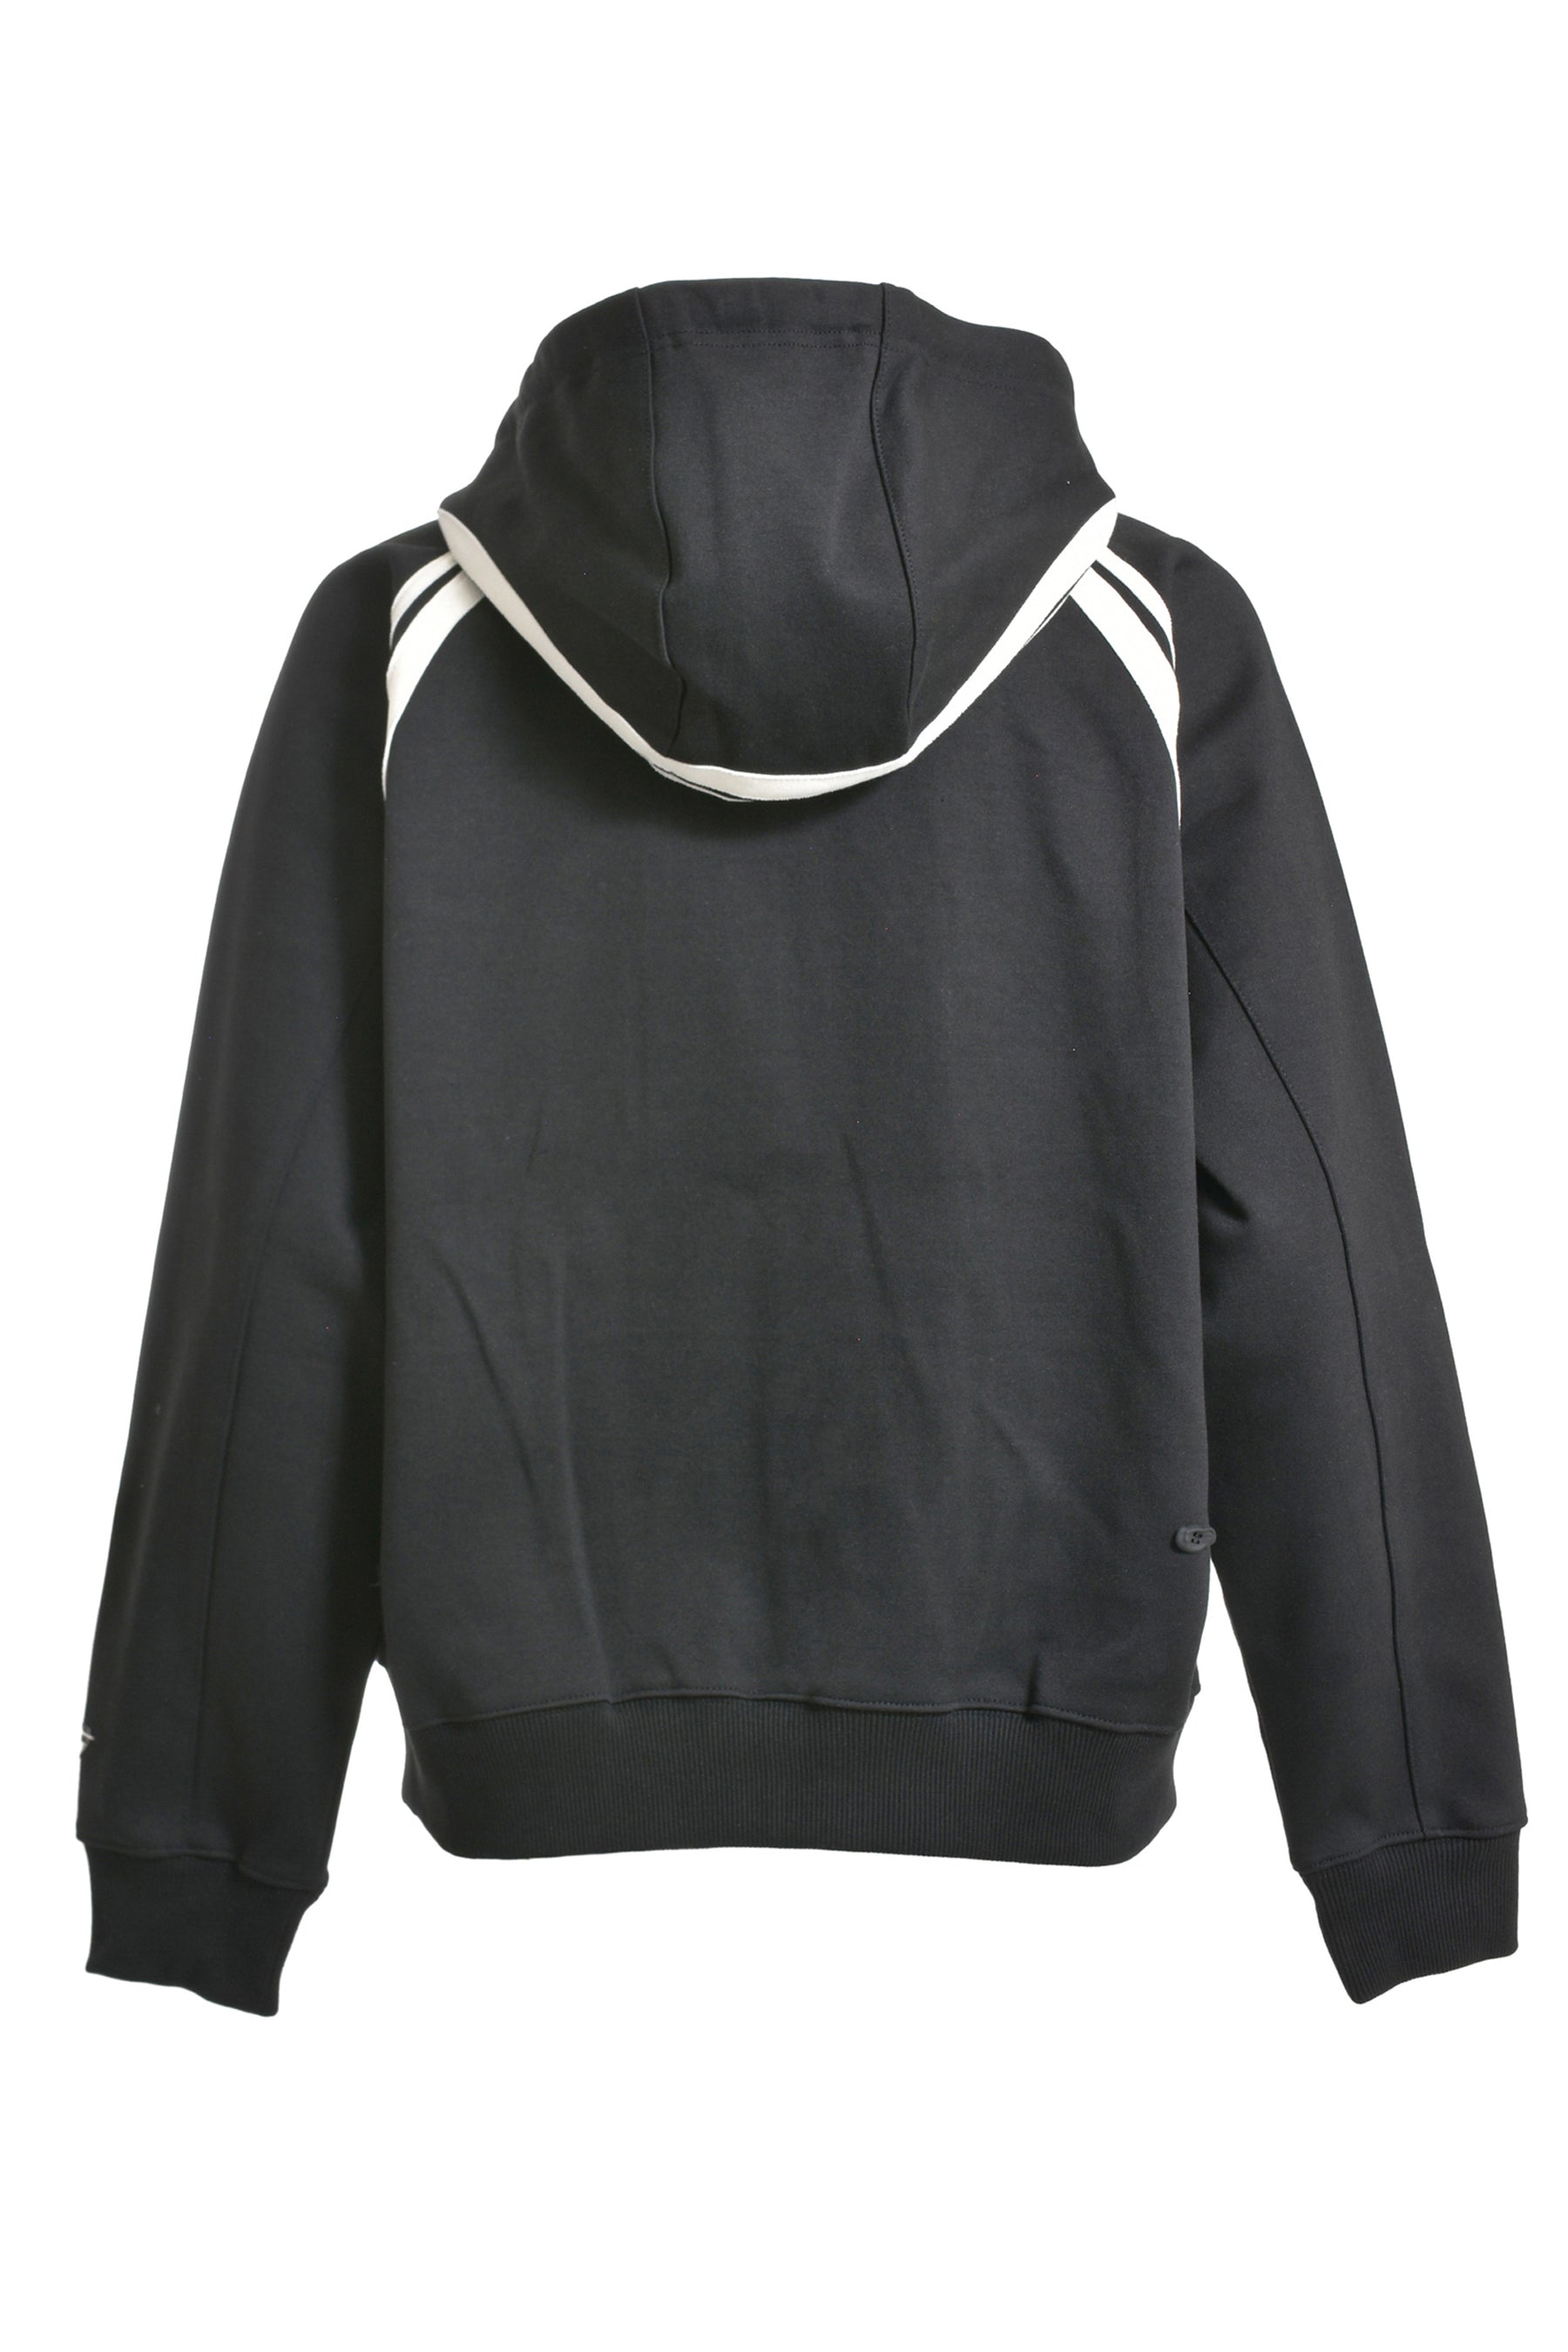 adererror fleece hoodie JK noir ブラック